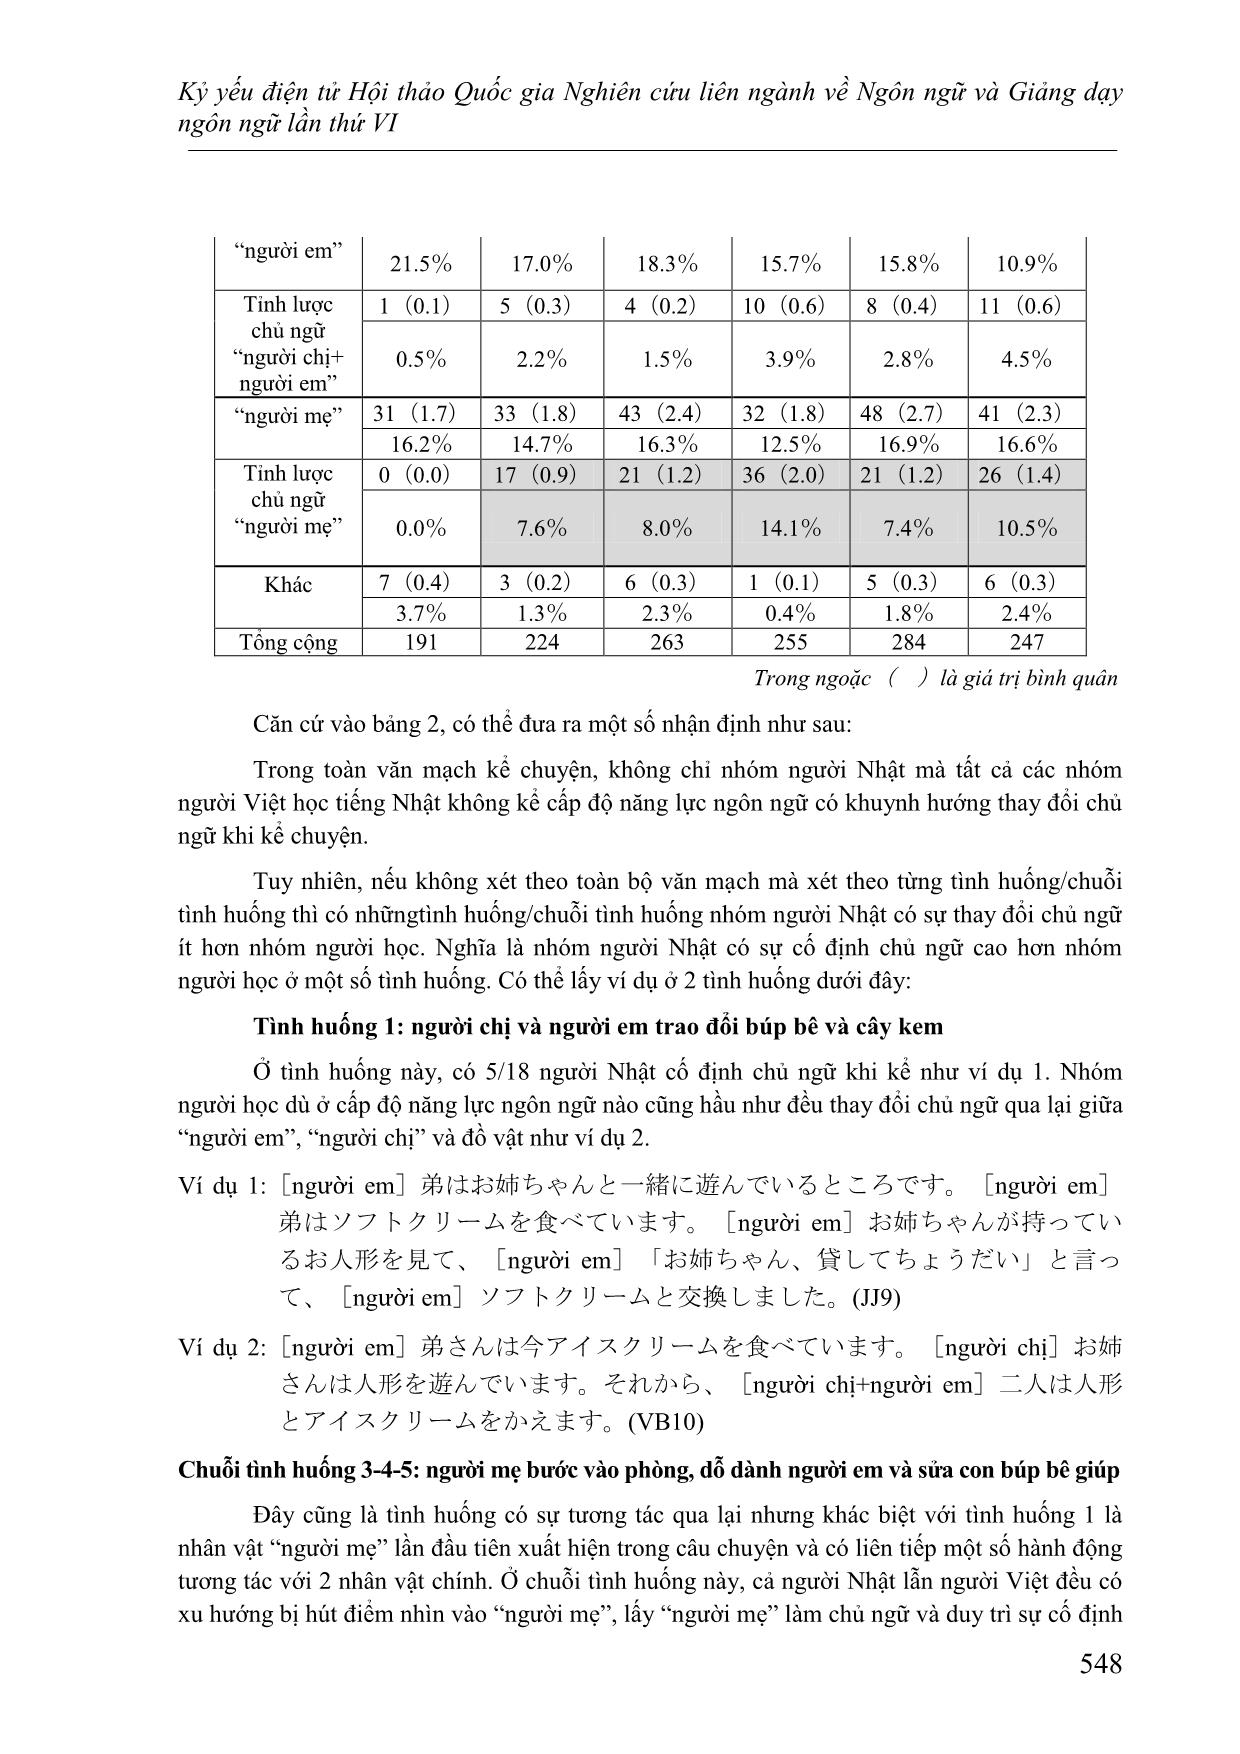 Nghiên cứu về sự lựa chọn chủ ngữ thể hiện điểm nhìn của người Việt học tiếng Nhật khi kể chuyện theo các ngôi kể khác nhau trang 5